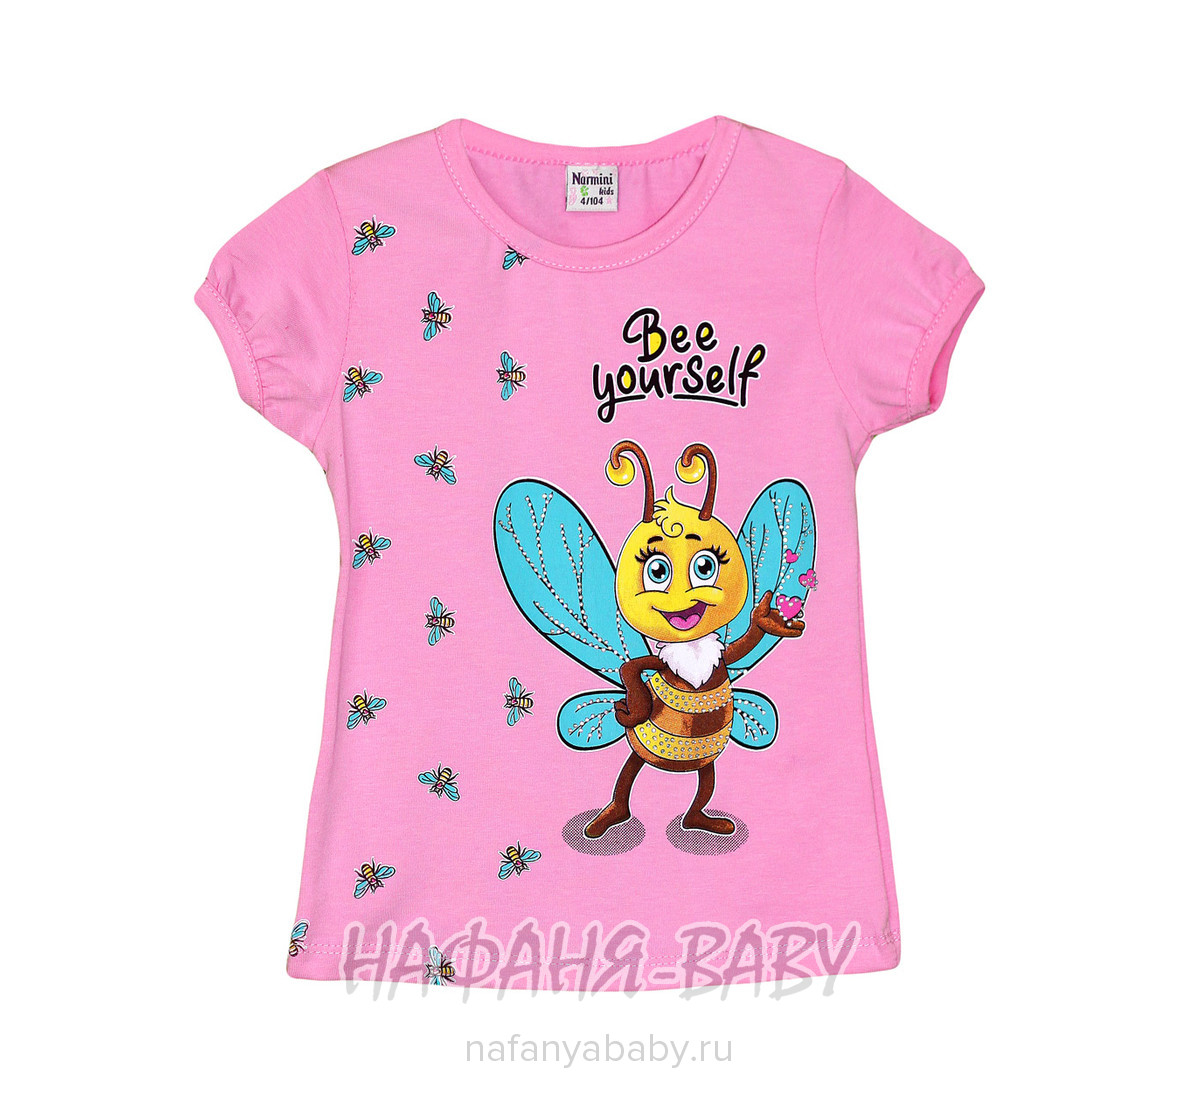 Детская футболка NARMINI, купить в интернет магазине Нафаня. арт: 7601.